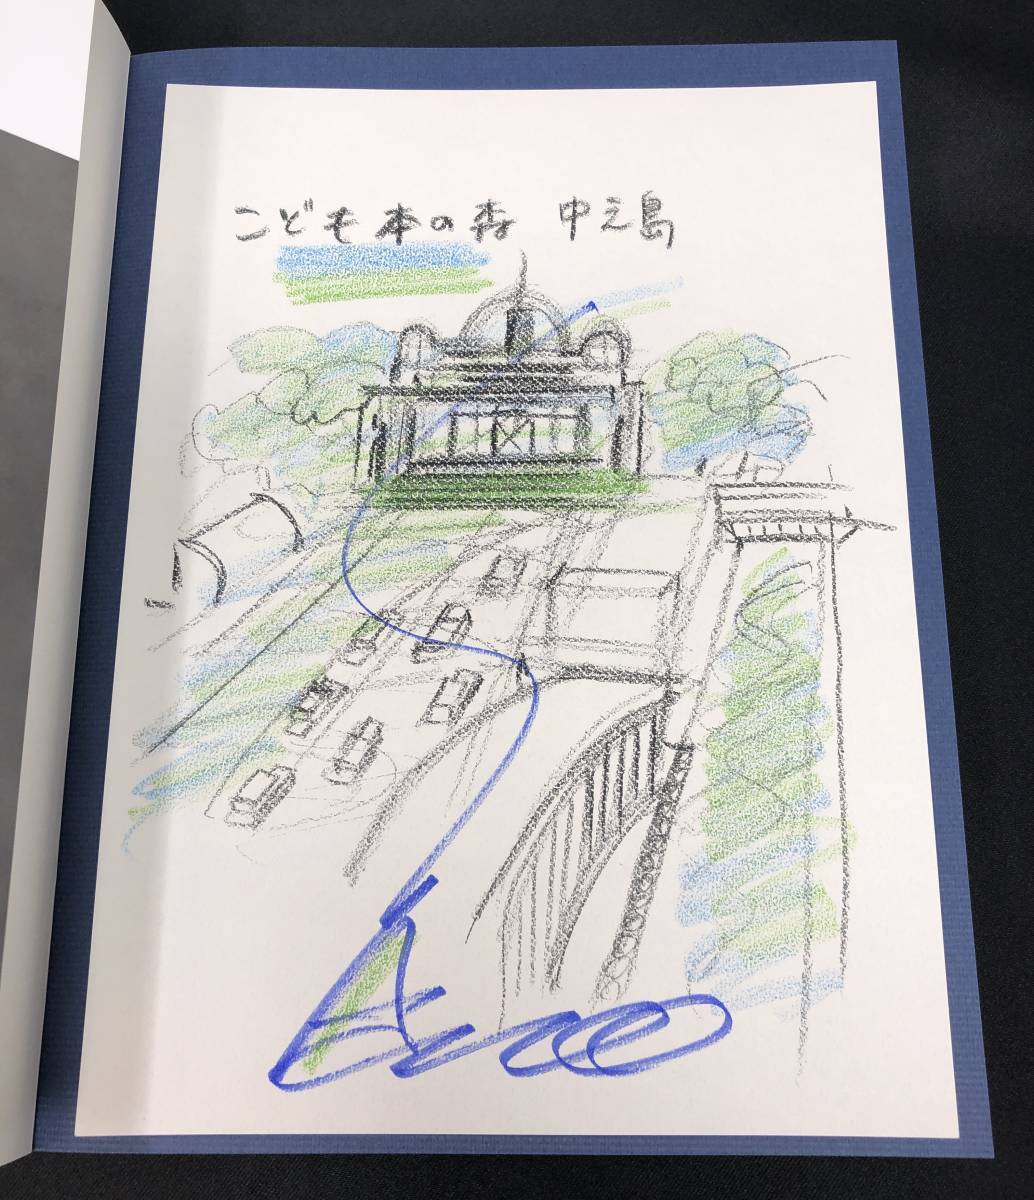 तादाओ एंडो की वास्तुकला 0 हस्ताक्षरित ड्राइंग के साथ विस्तारित और संशोधित संस्करण (बच्चों की पुस्तक वन नाकानोशिमा) तादाओ एंडो 0 प्रक्रिया और विचार स्केच चित्रण, प्राकृतिक विज्ञान और प्रौद्योगिकी, अभियांत्रिकी, वास्तुशिल्पीय इंजीनियरिंग